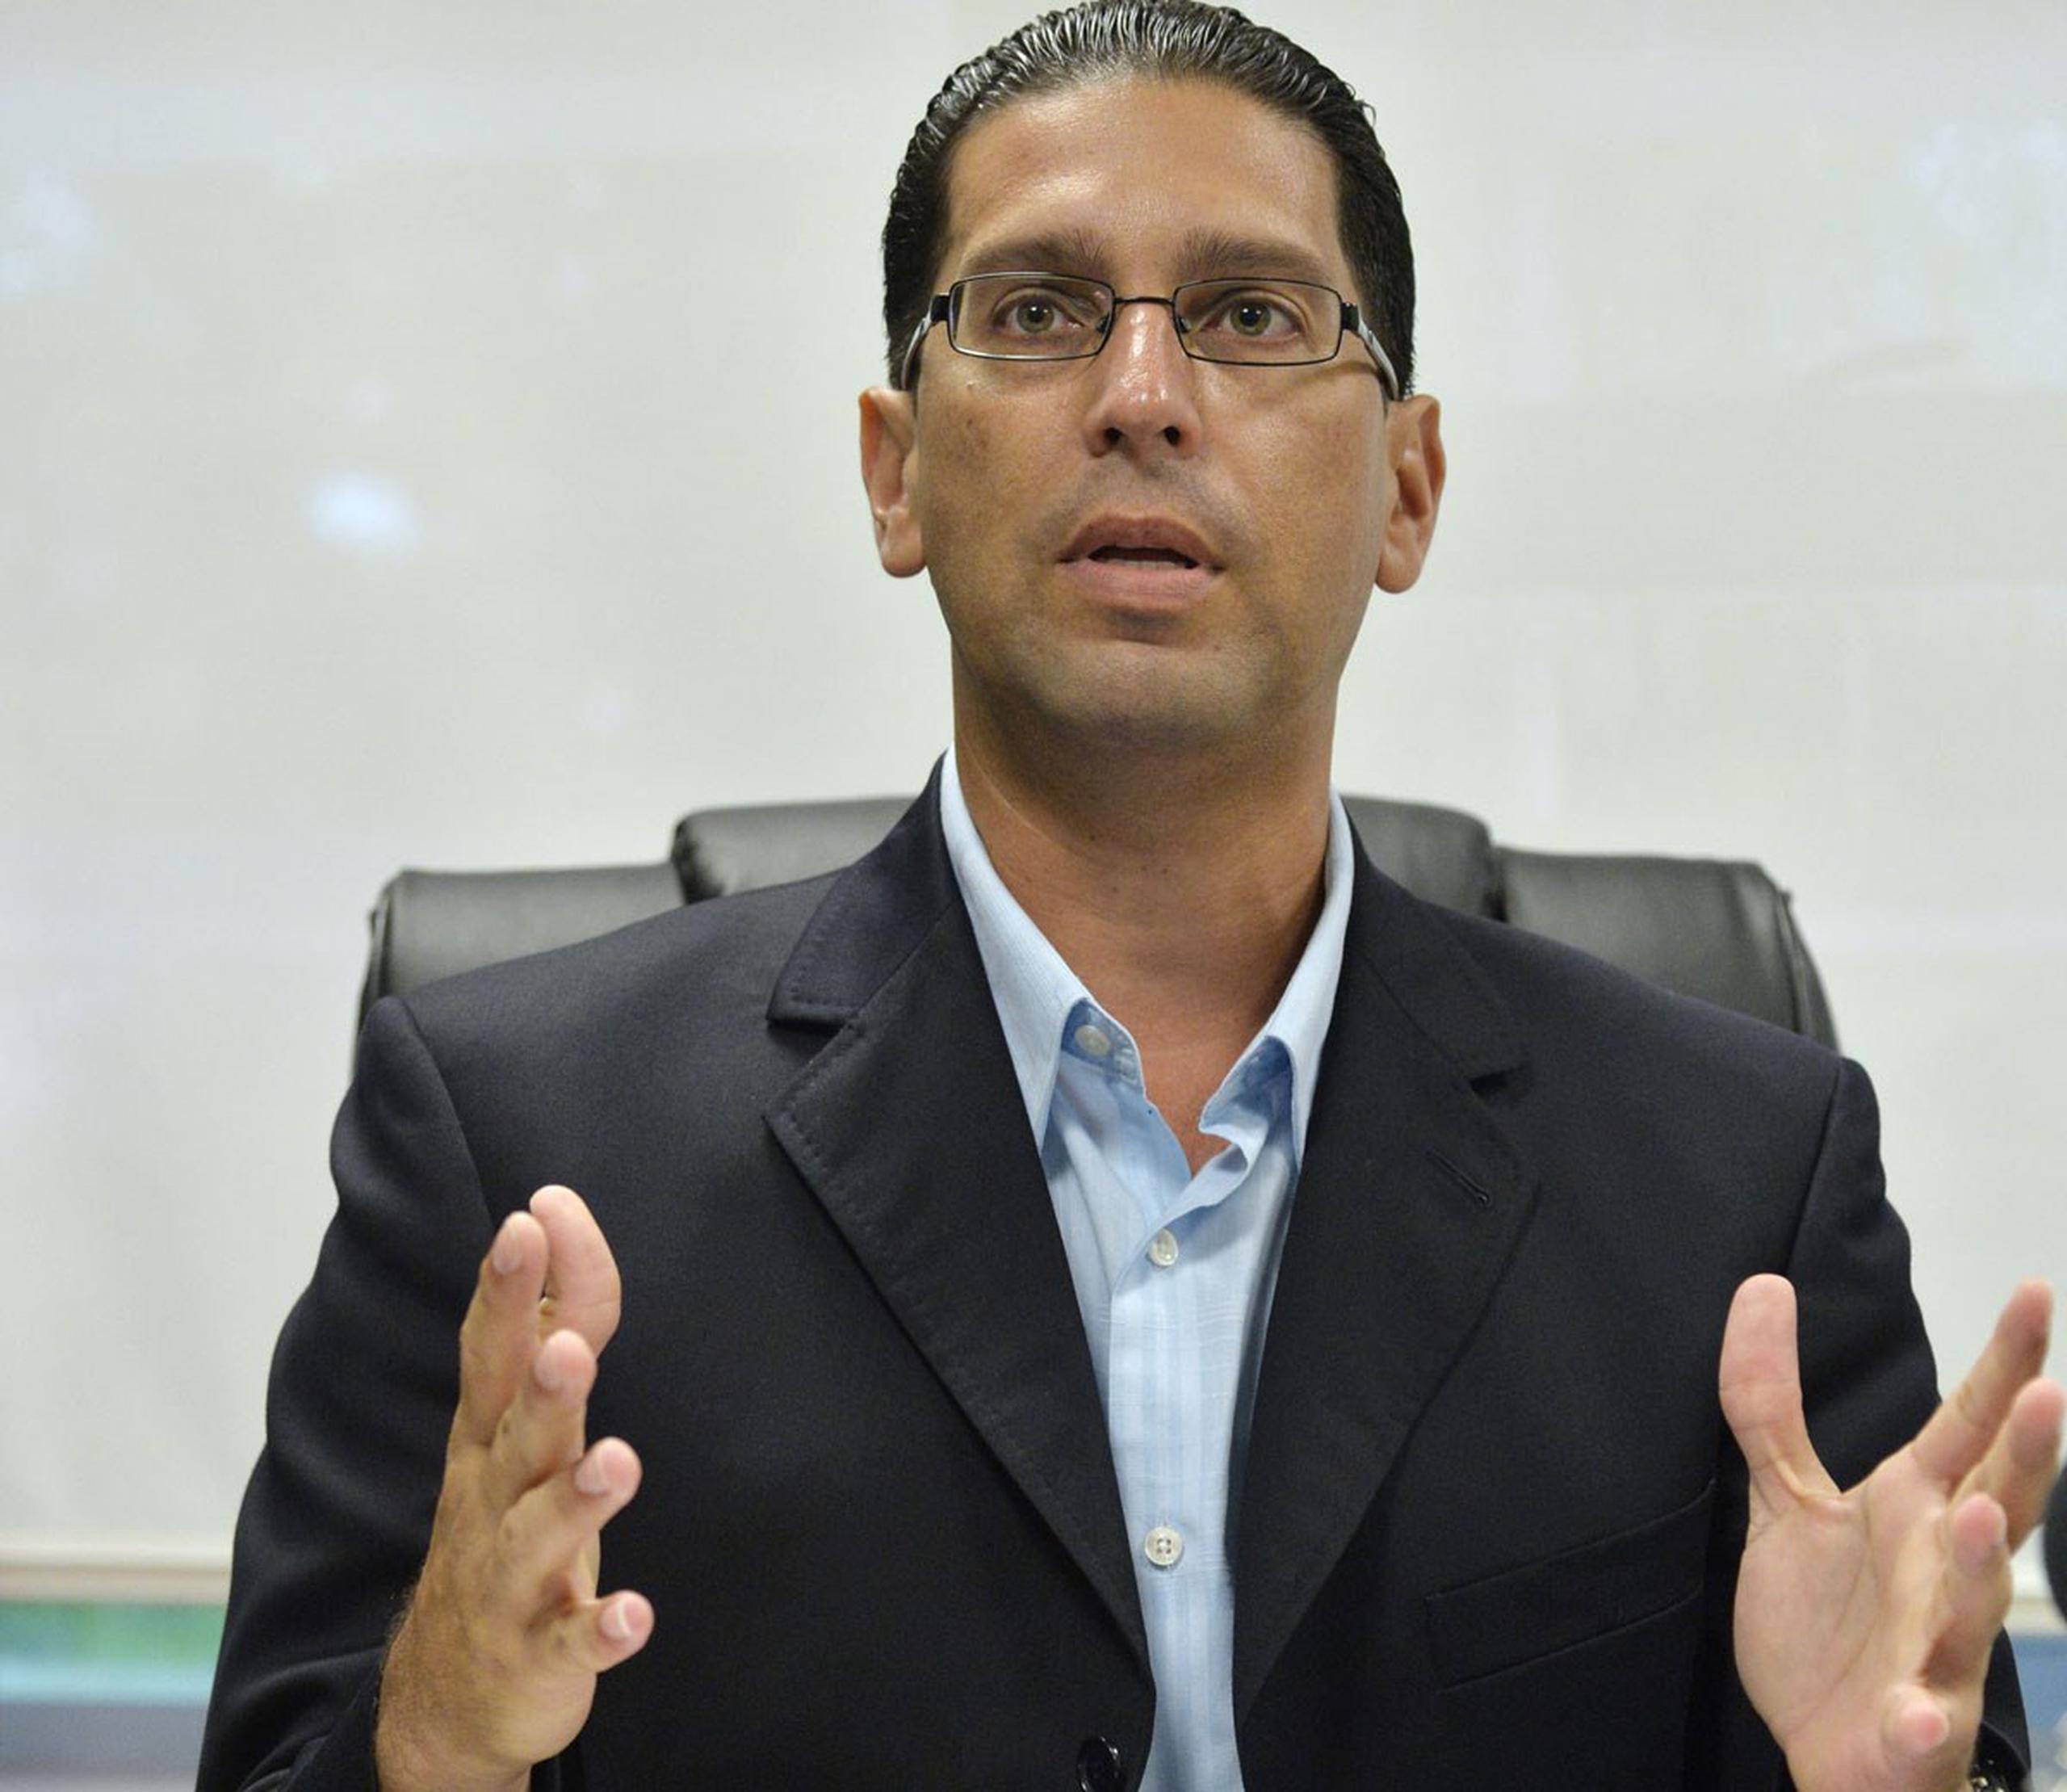 El representante Rodríguez Aguiló indicó que la evidencia contra el alcalde de Ciales fue “devastadora”. (GFR Media)